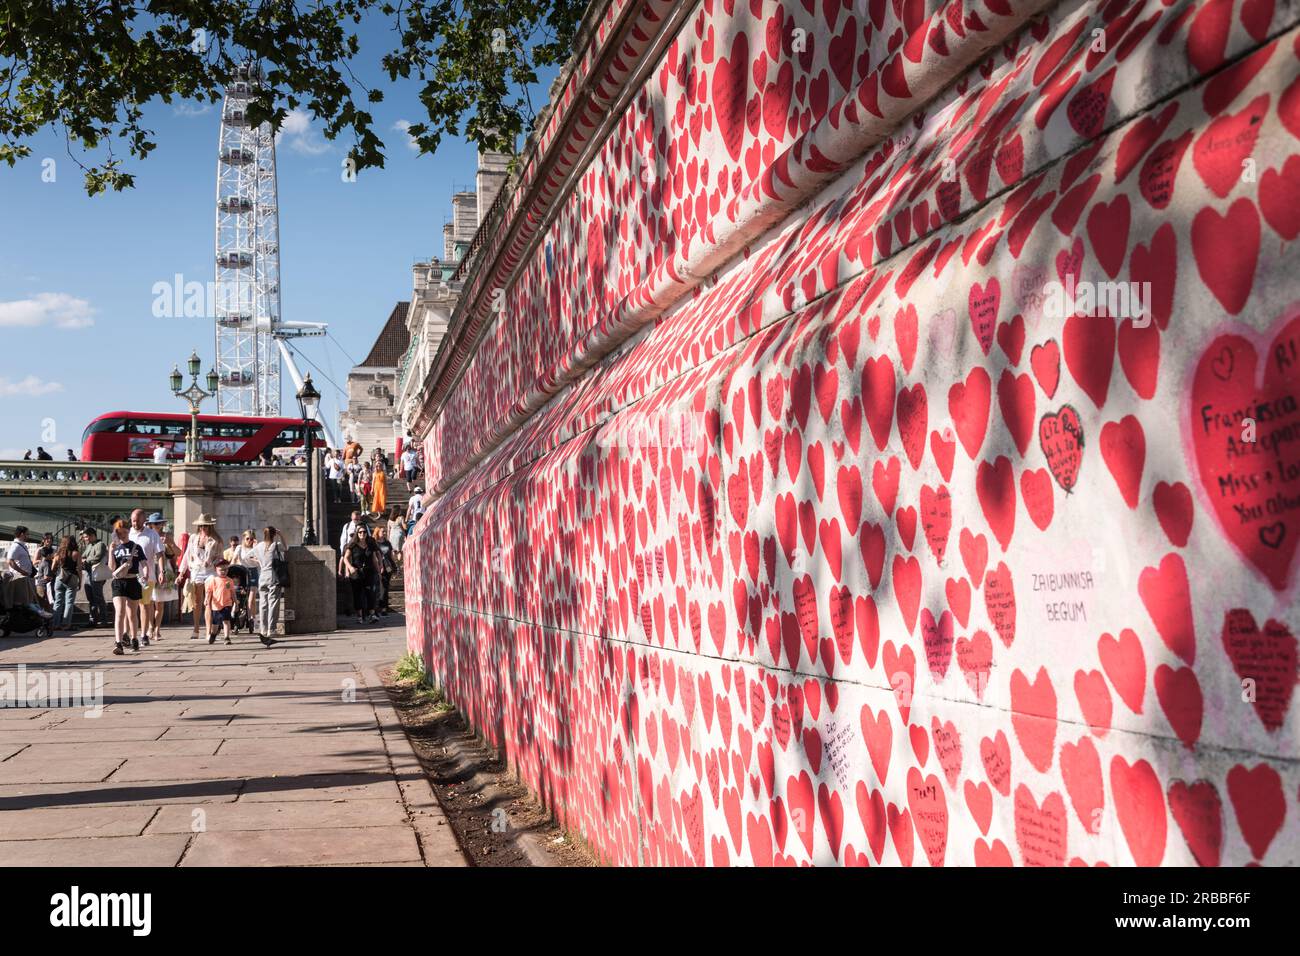 Cuori rossi e rosa sul National Covid Memorial Wall, Londra, Inghilterra, Regno Unito. Foto Stock